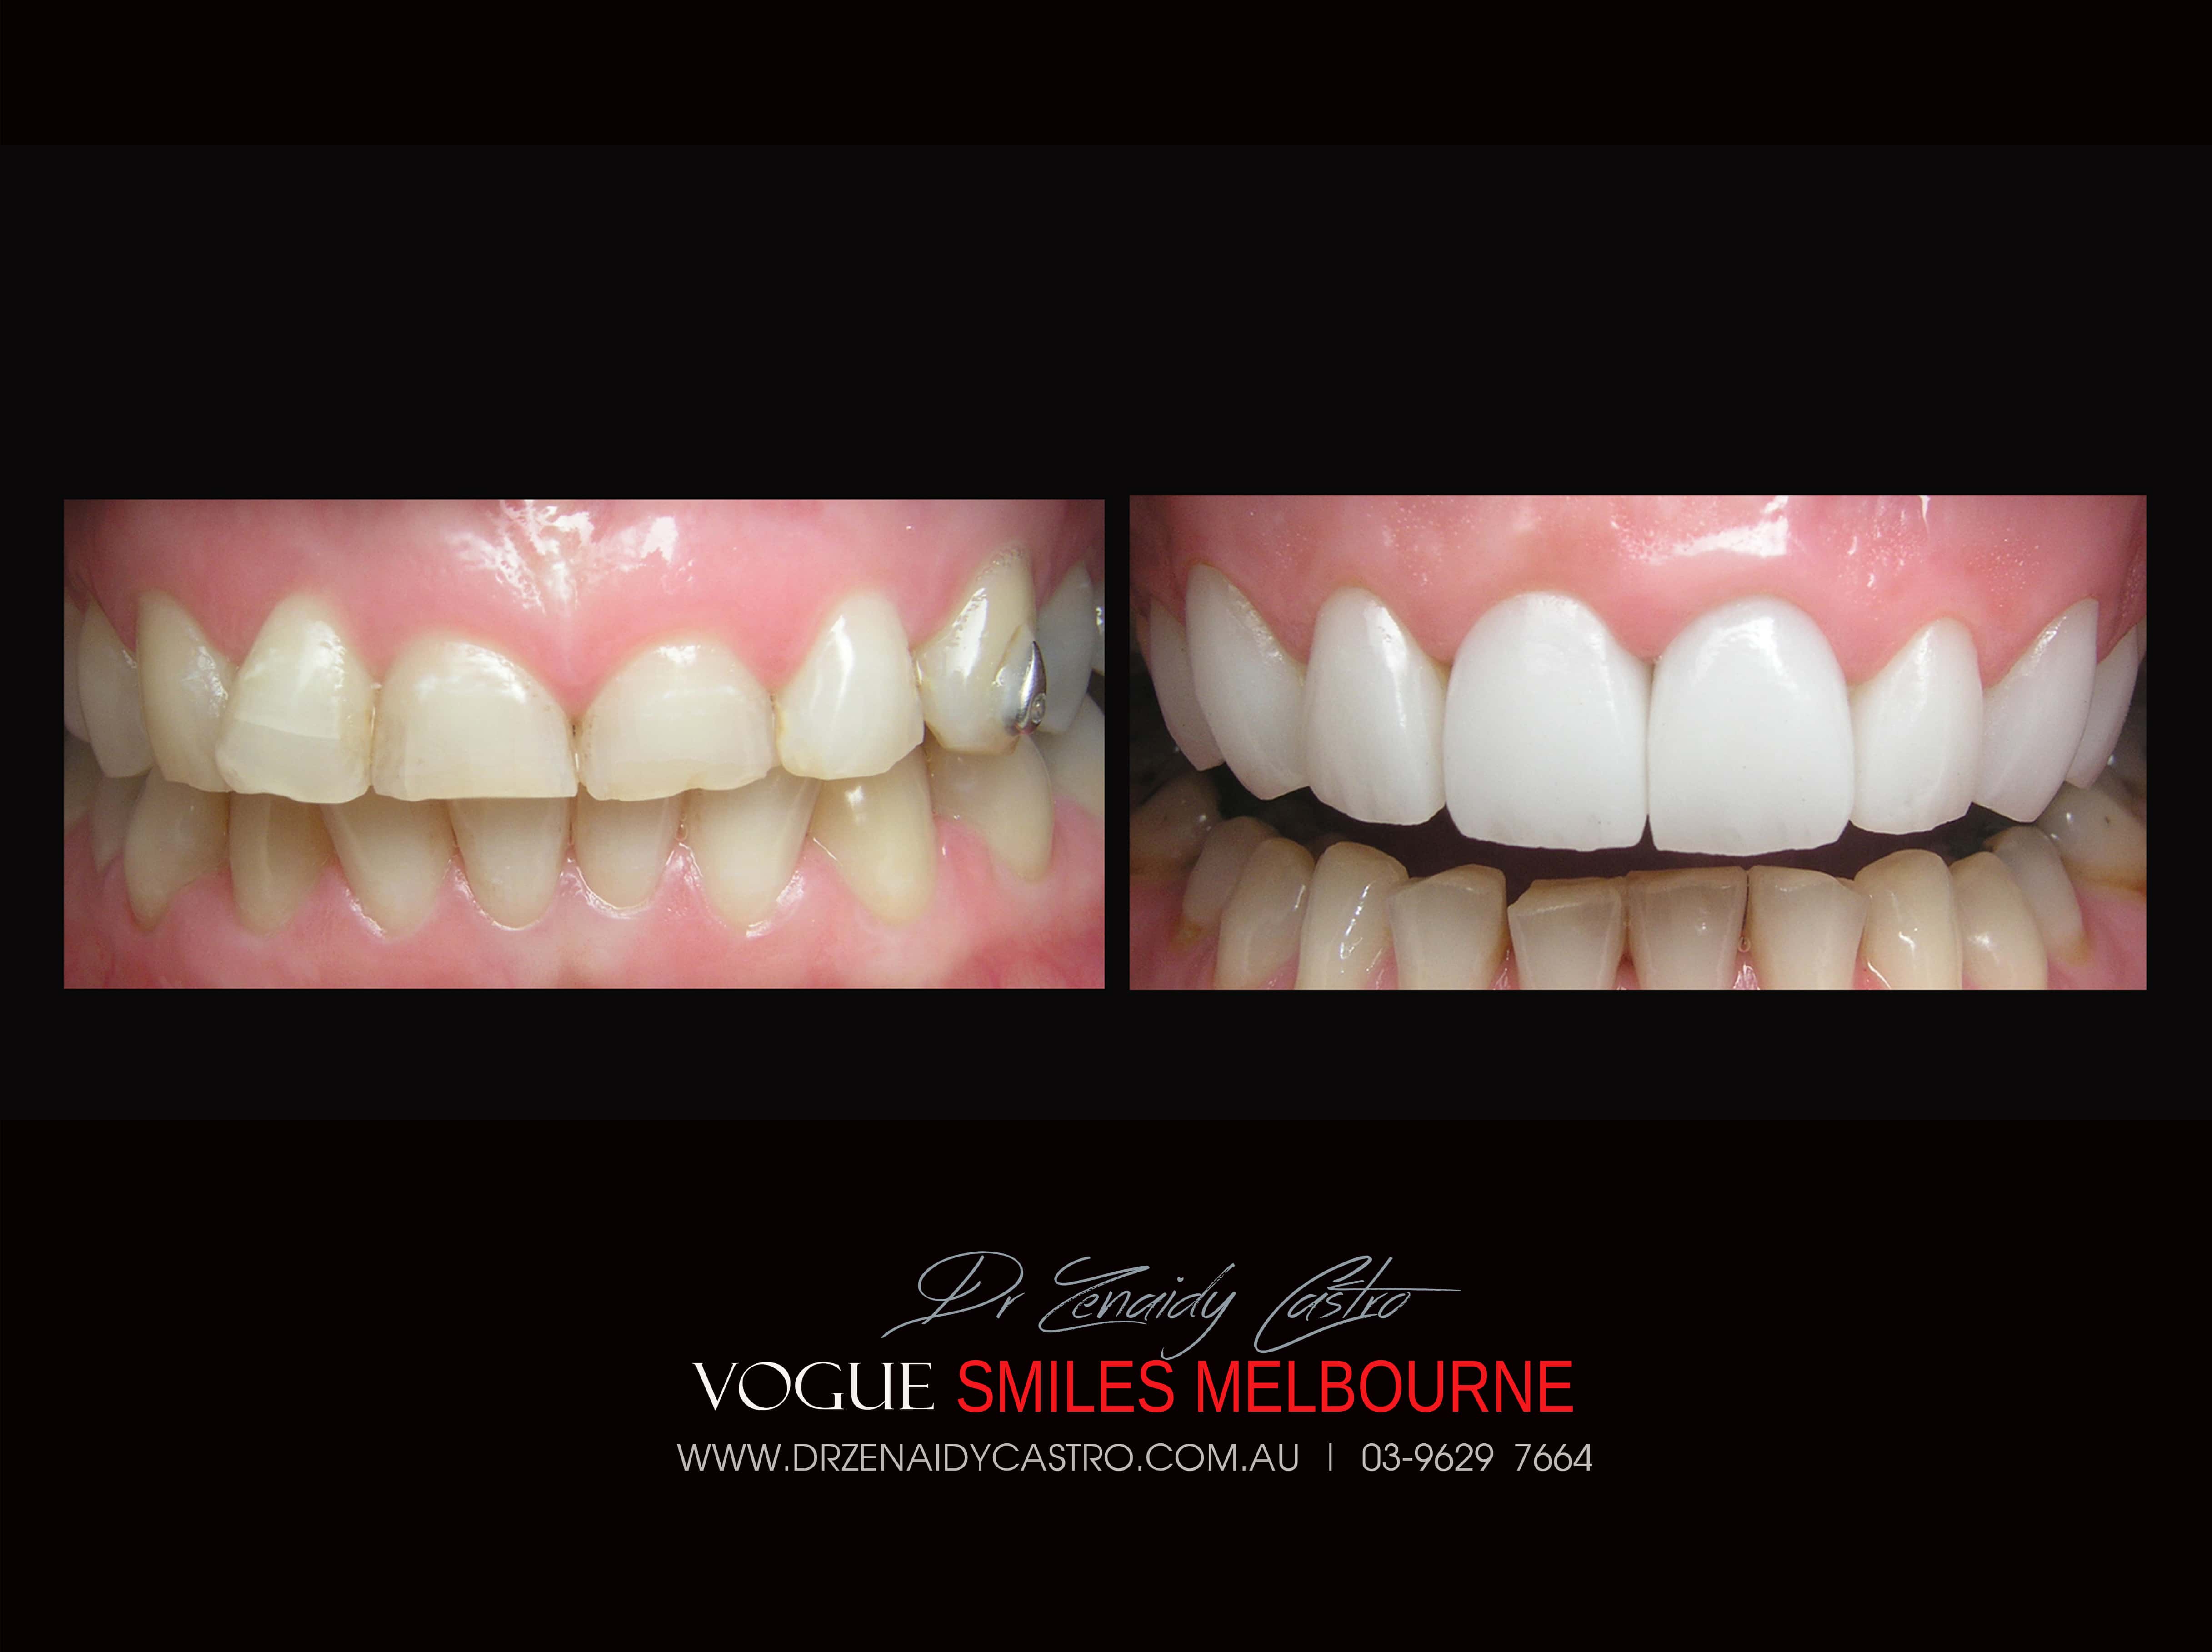 Porcelain Veneer for Short Teeth, Worn down teeth - #1 Porcelain Veneers Melbourne -Top Cosmetic dentist